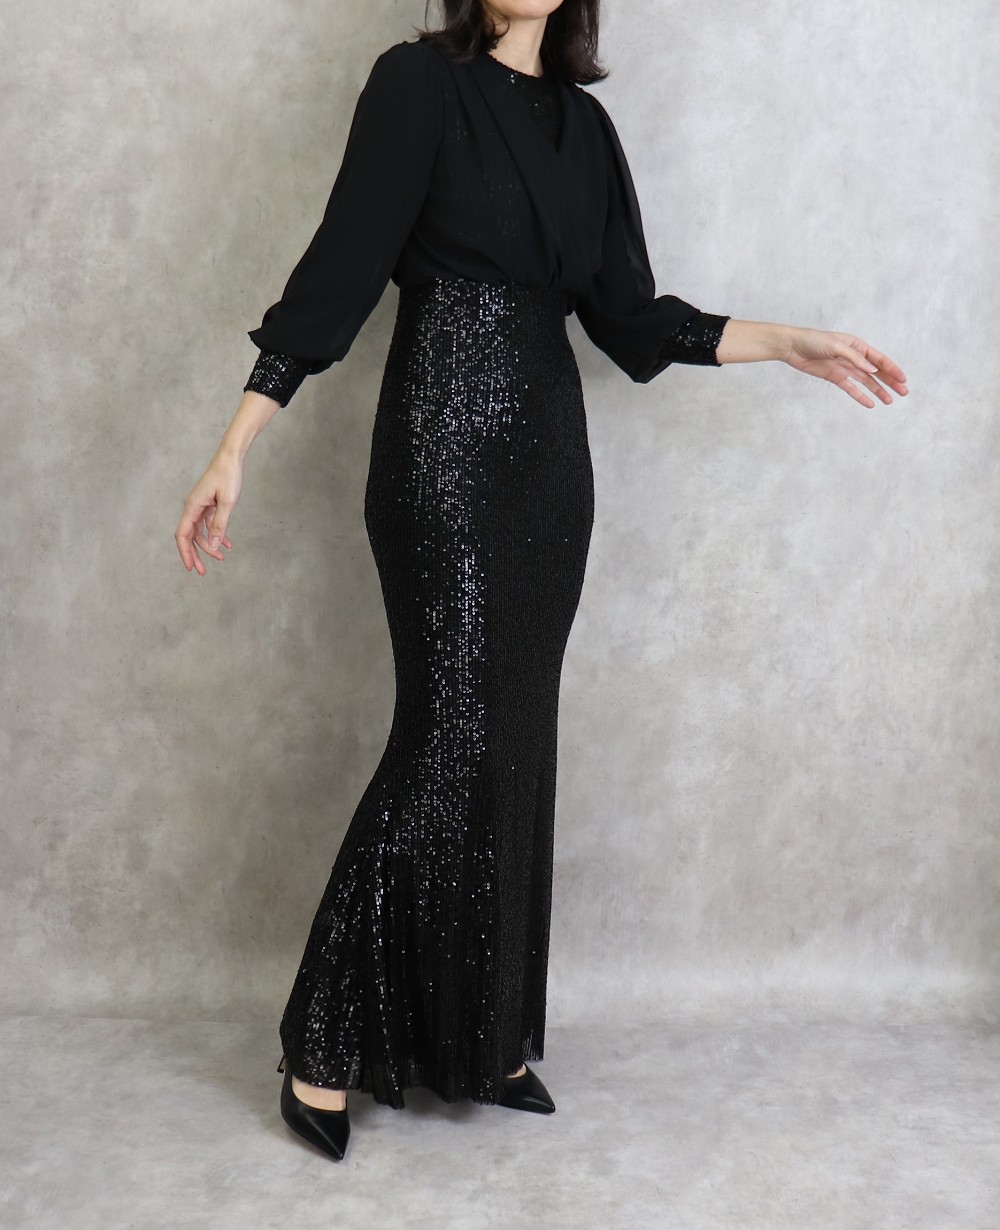 Robe de soirée longue à strass de couleur noire brillante pour femme  (Classe chic et pas cher)